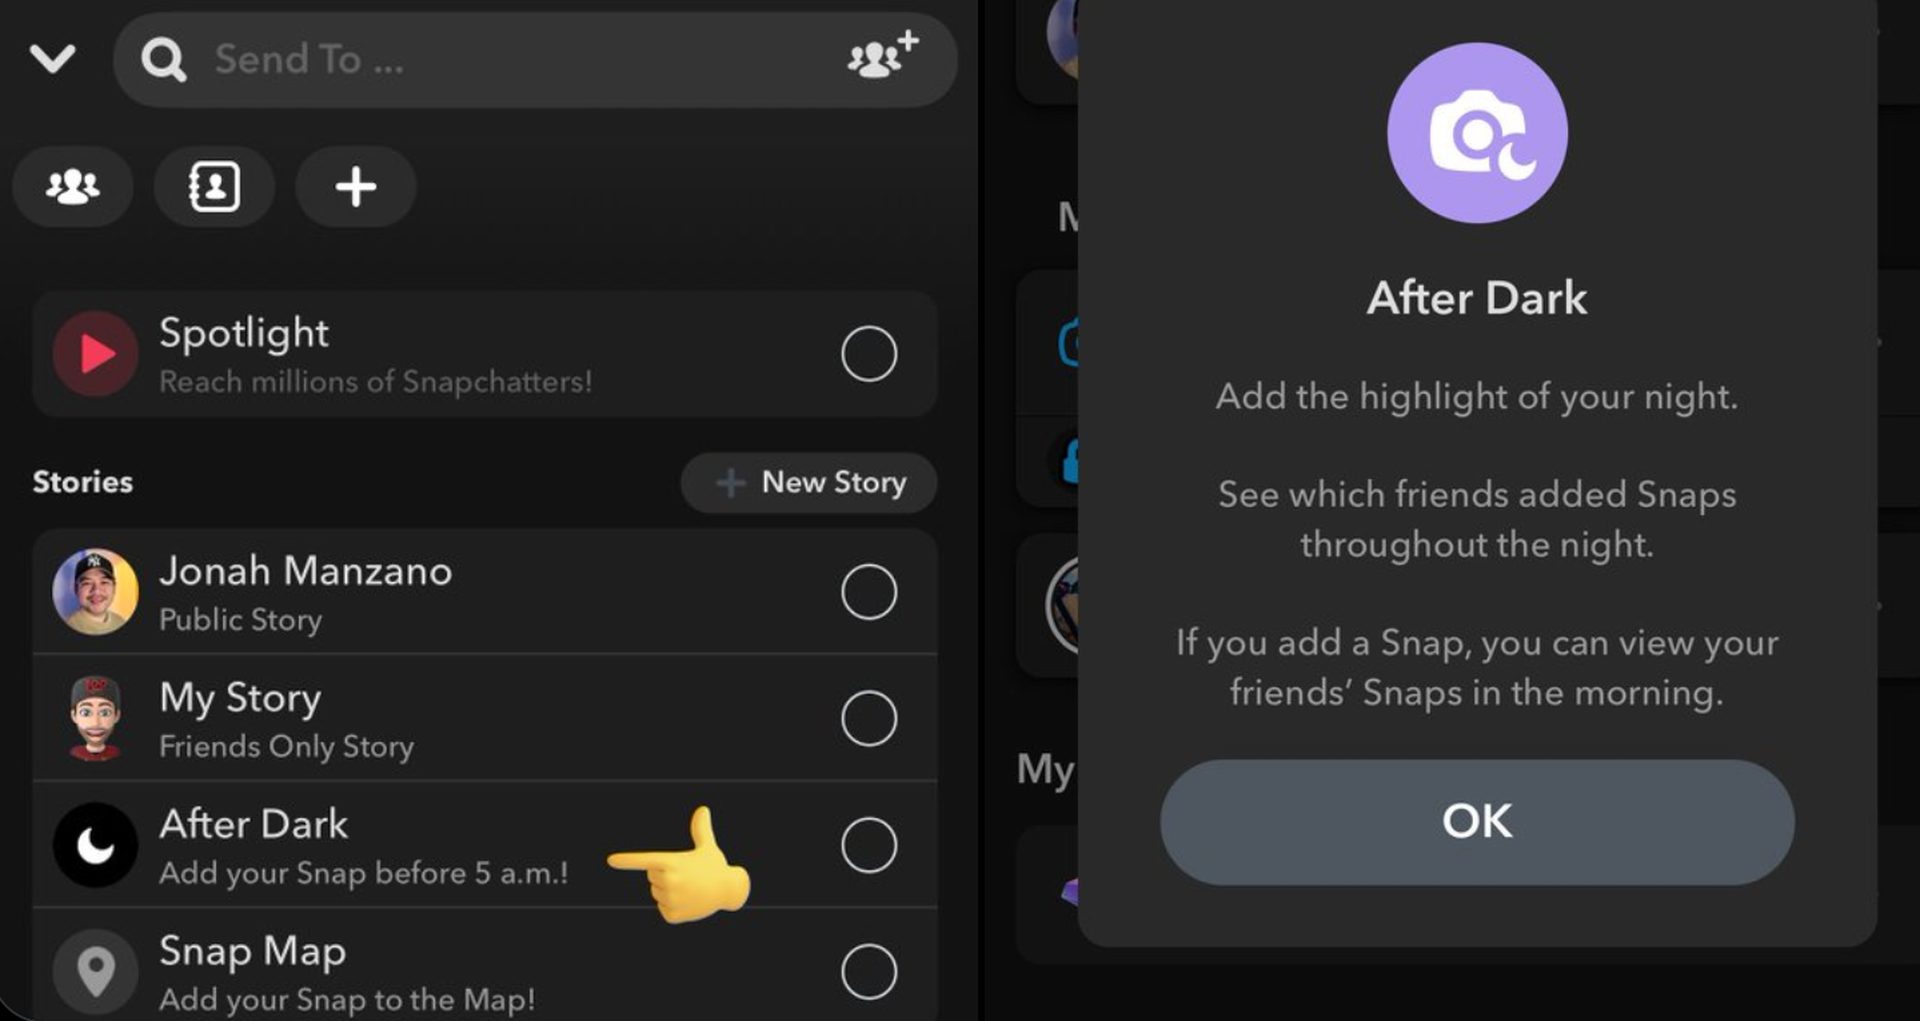 Wat is Snapchat in het donker? Leer hoe je een Snapchat After Dark Snap plaatst en er een verwijdert. Blijf lezen en ontdek deze BeReal-achtige functie!